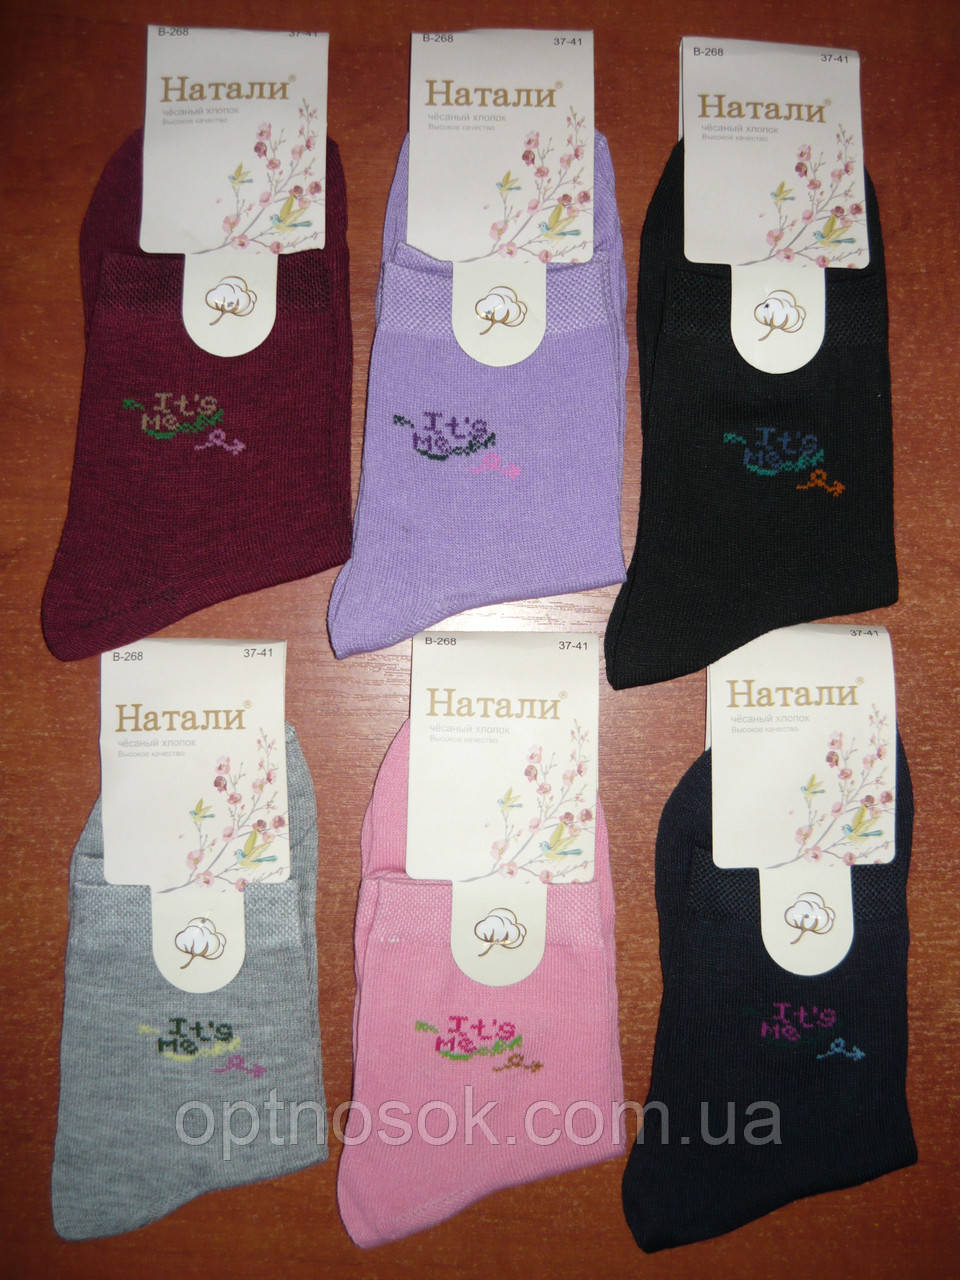 Жіночі шкарпетки "Наталі". р. 37-41. Асорті